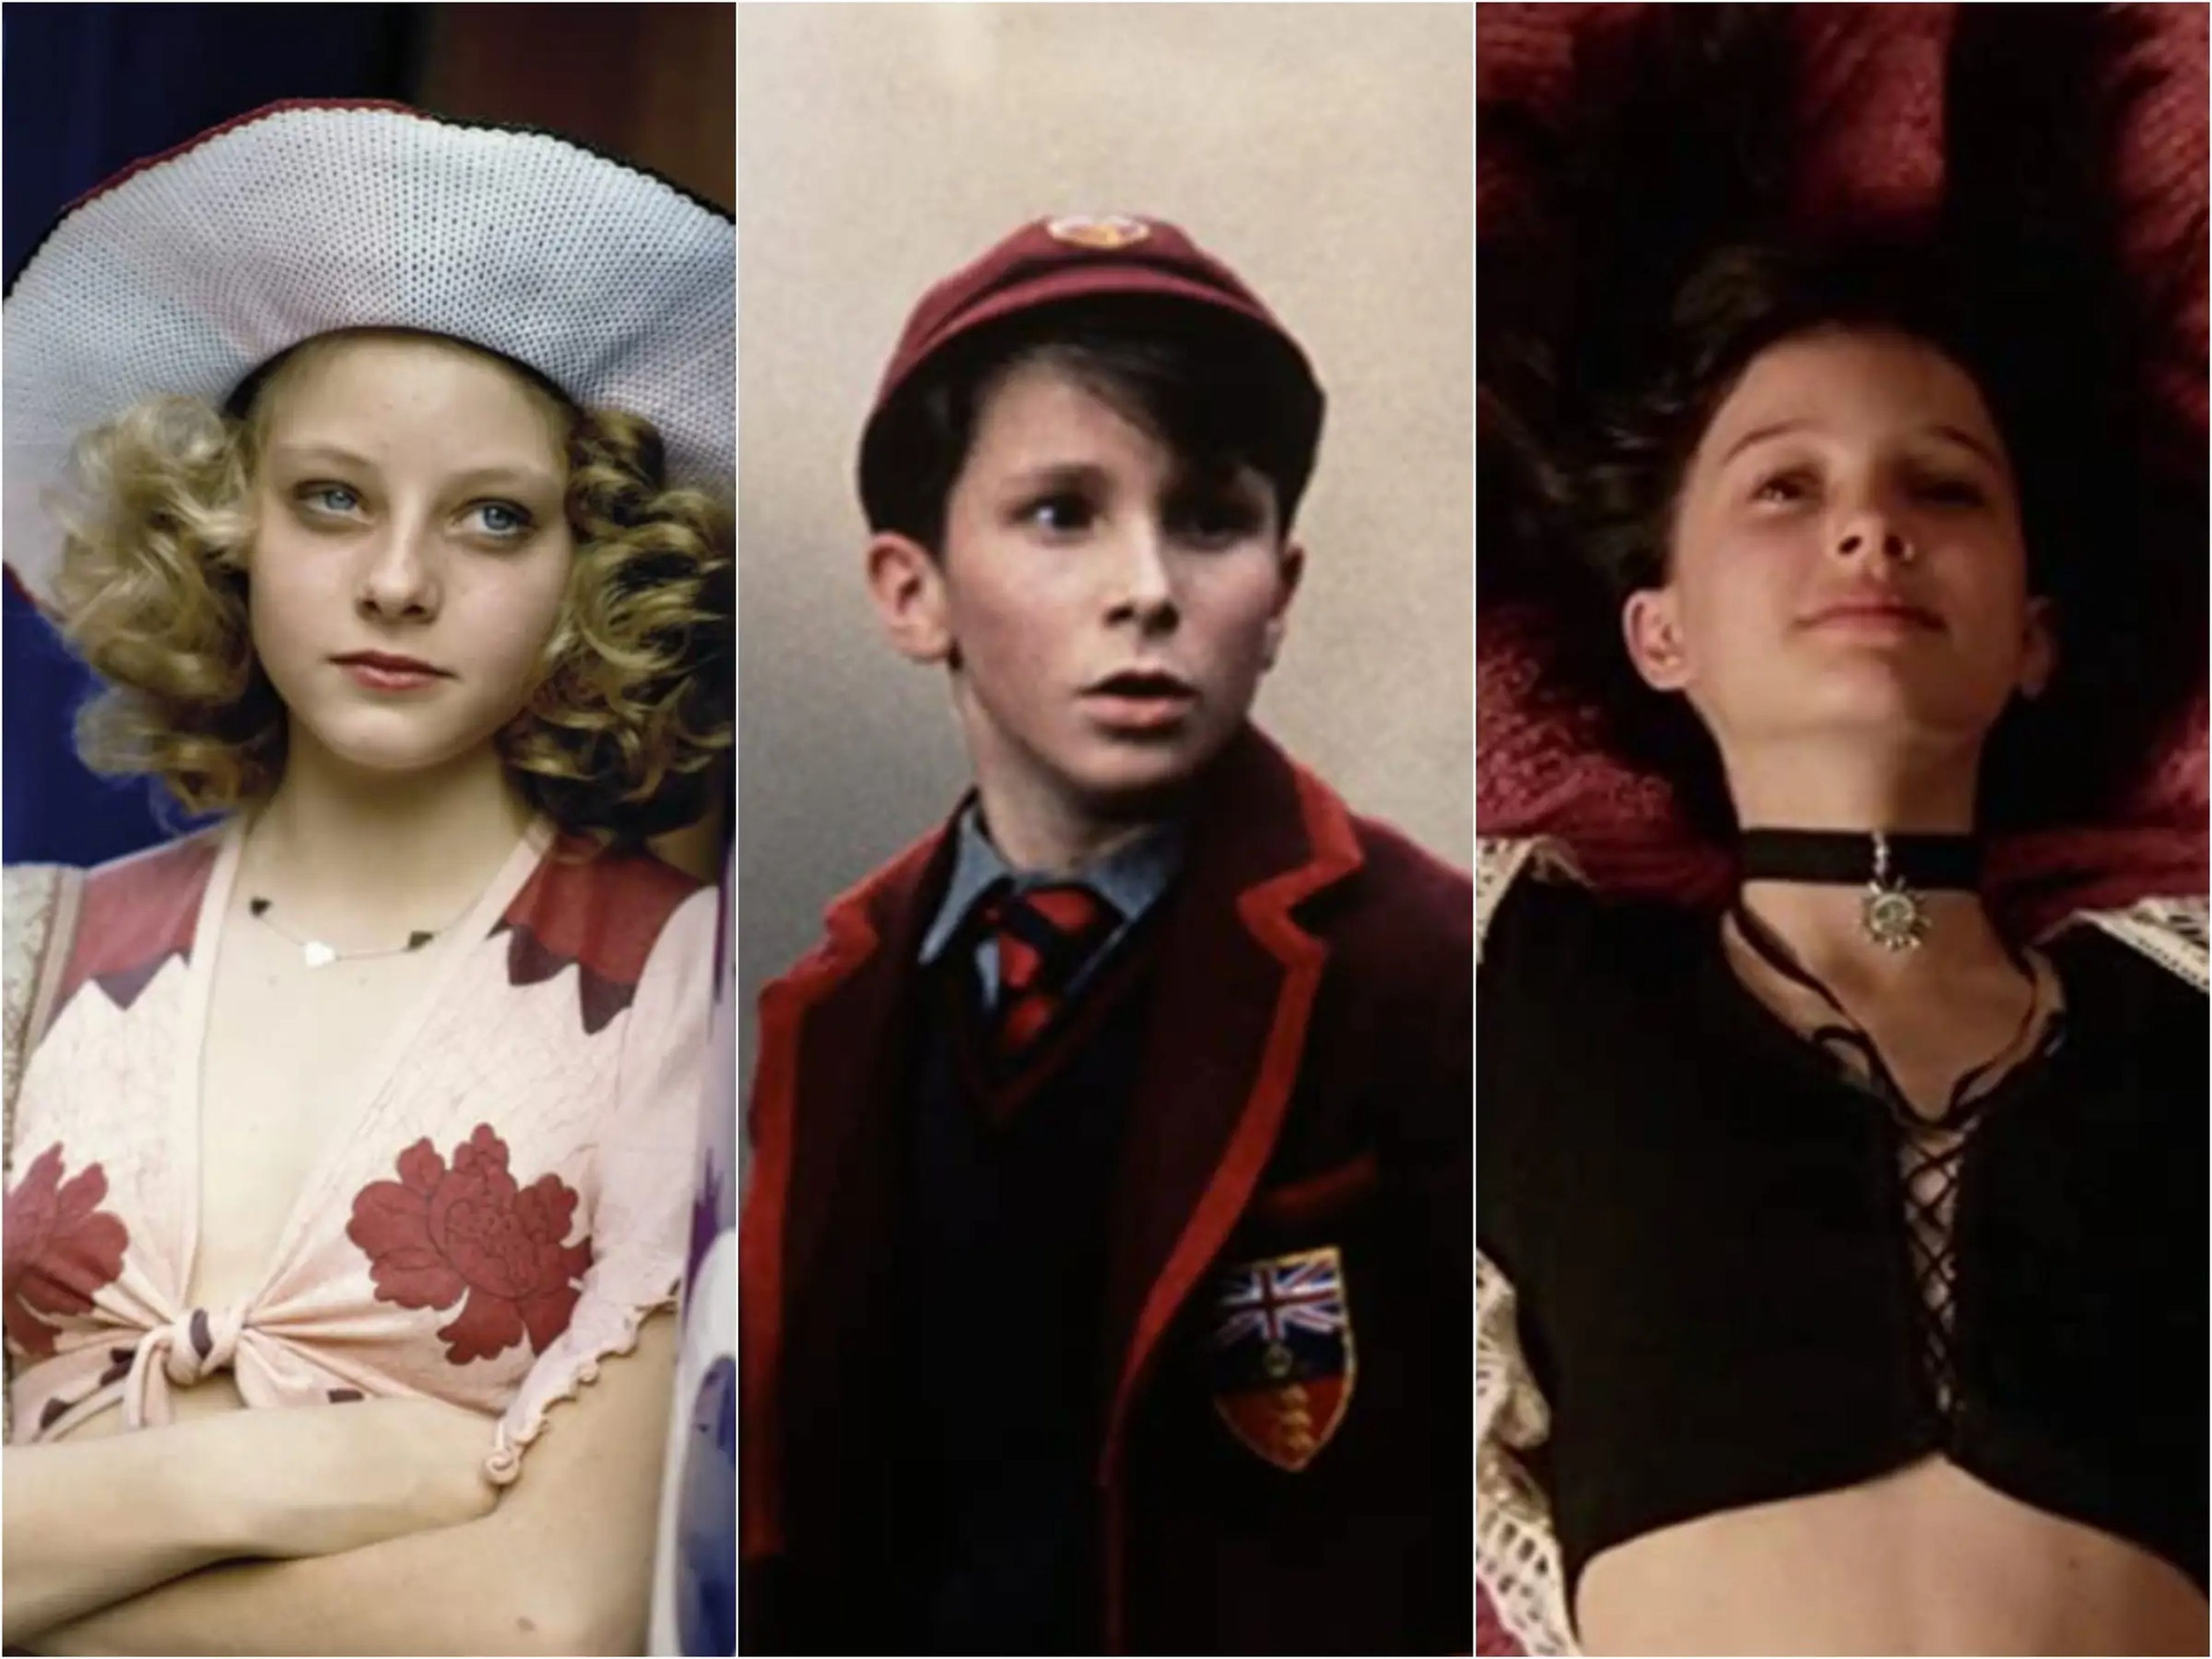 Jodie Foster, Christian Bale y Natalie Portman son algunas de las estrellas infantiles que han interpretado personajes muy conocidos en películas que muchos consideraron controvertidas o inapropiadas.